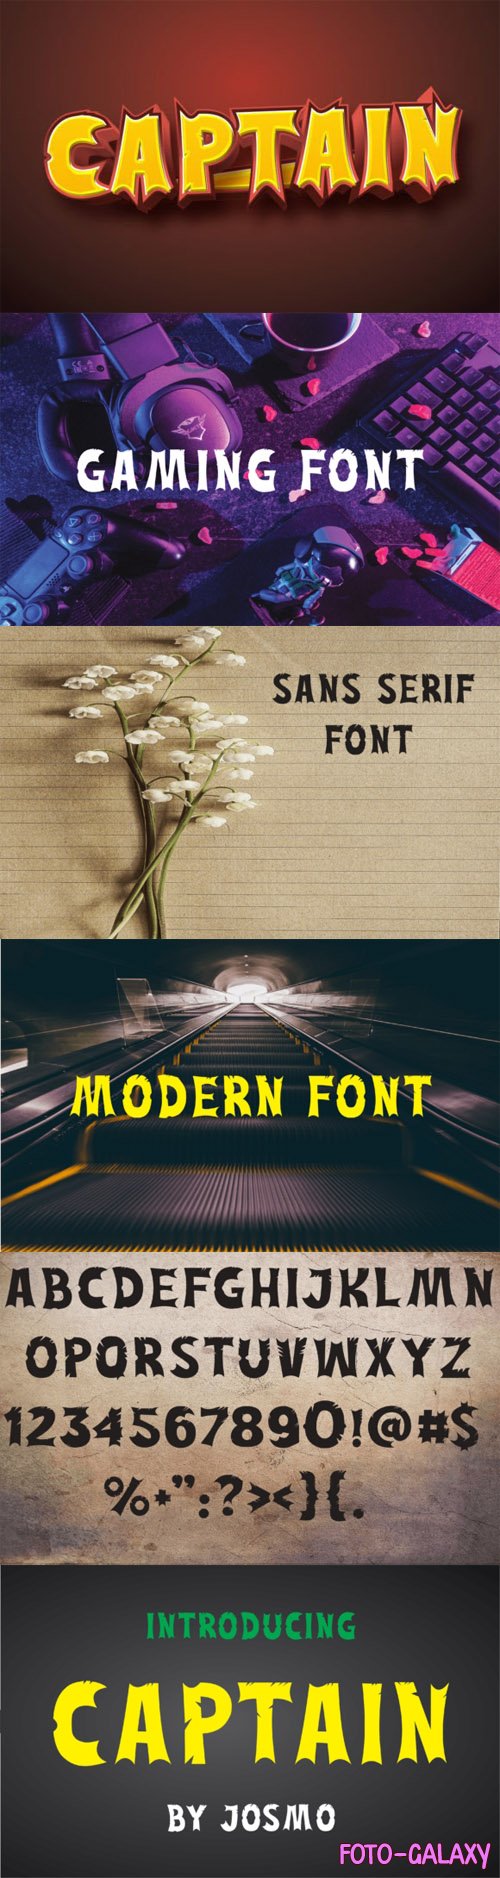 Captain Sans Serif Font